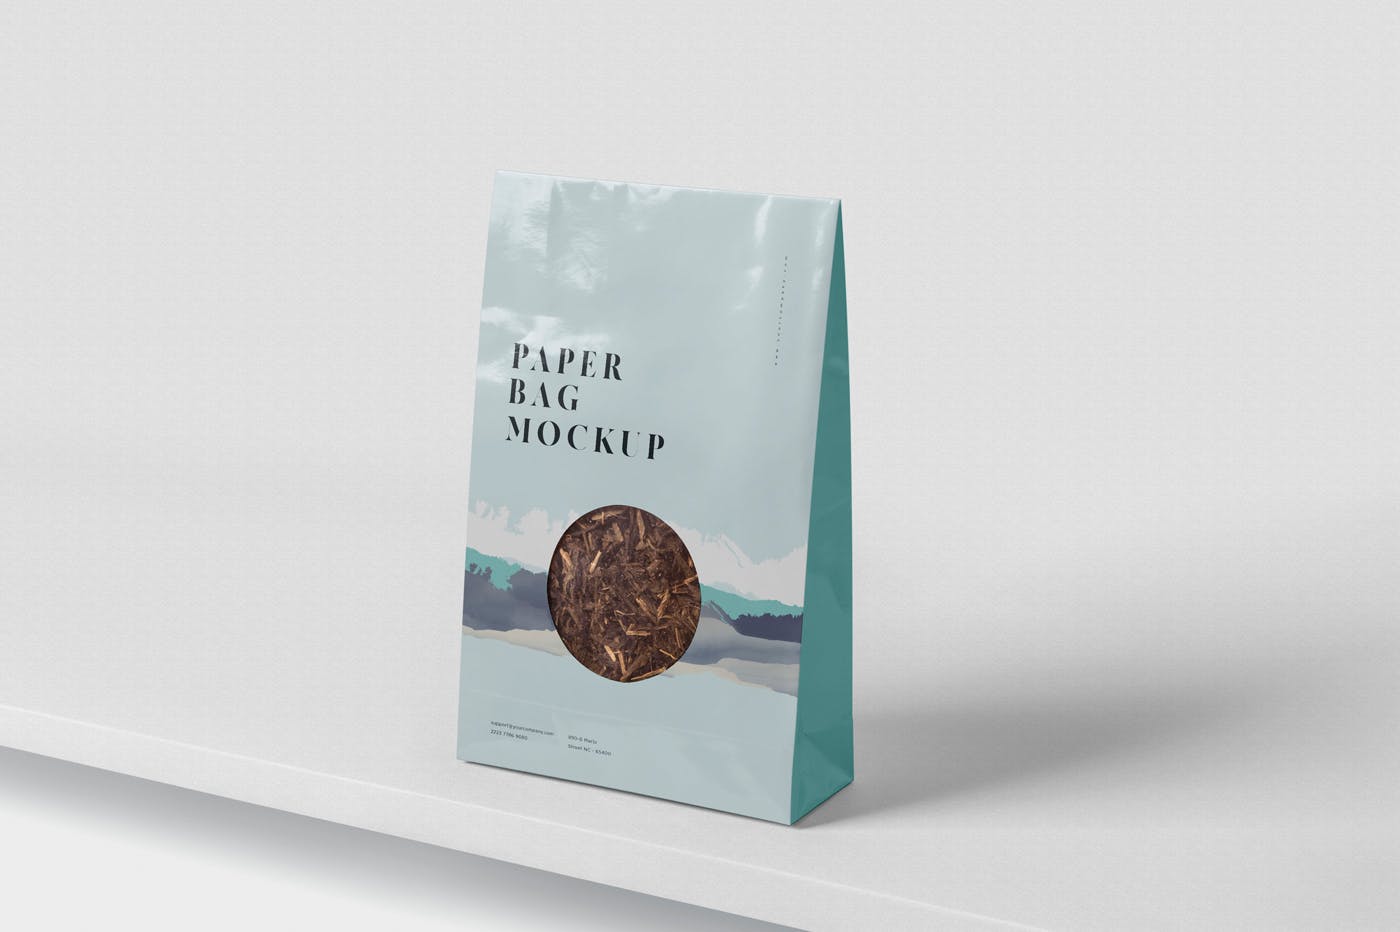 购物纸袋专卖店购物袋外观设计样机 Paper Bag Mockup插图(2)